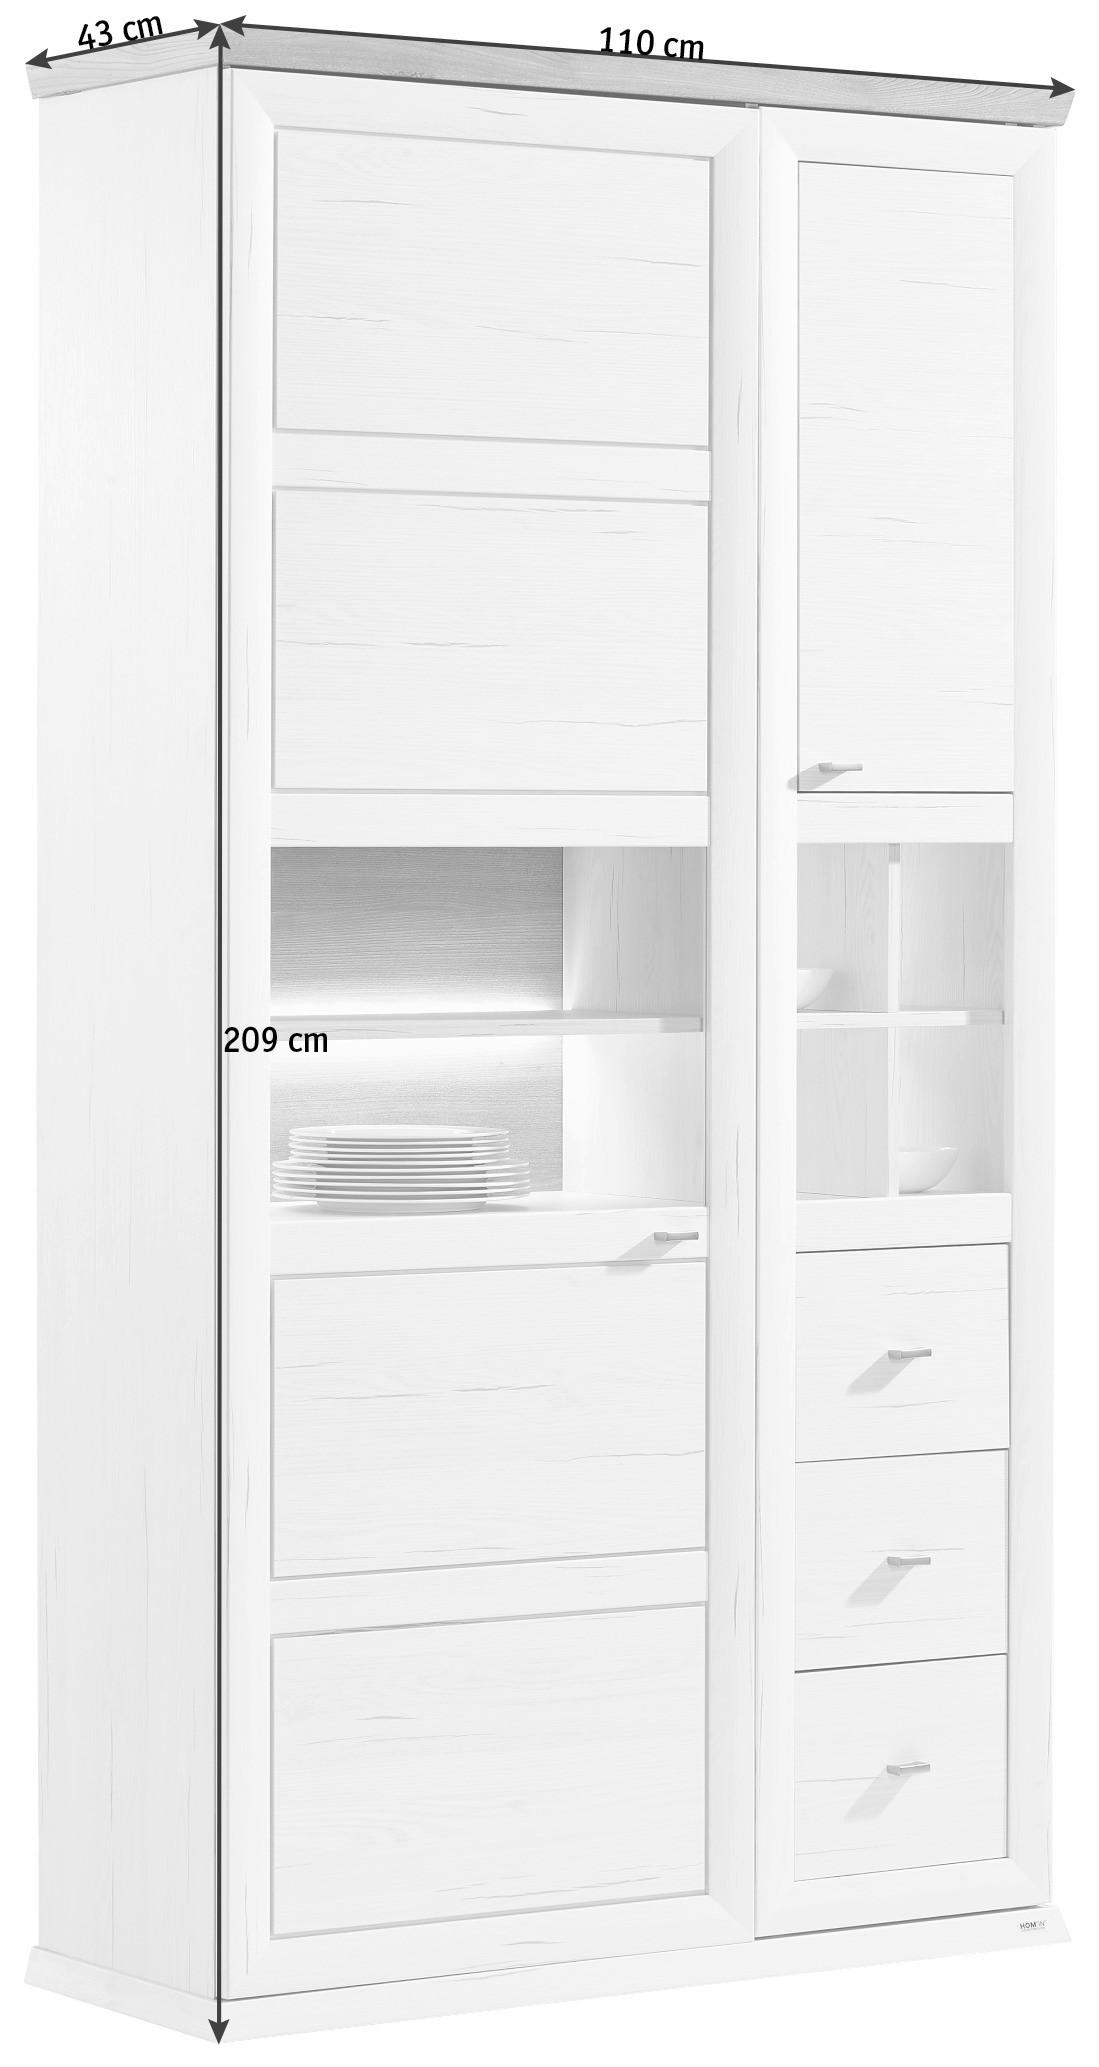 VITRÍNA, sivá, biela, 110/209/43 cm - sivá/biela, Lifestyle, kov/kompozitné drevo (110/209/43cm) - Hom`in